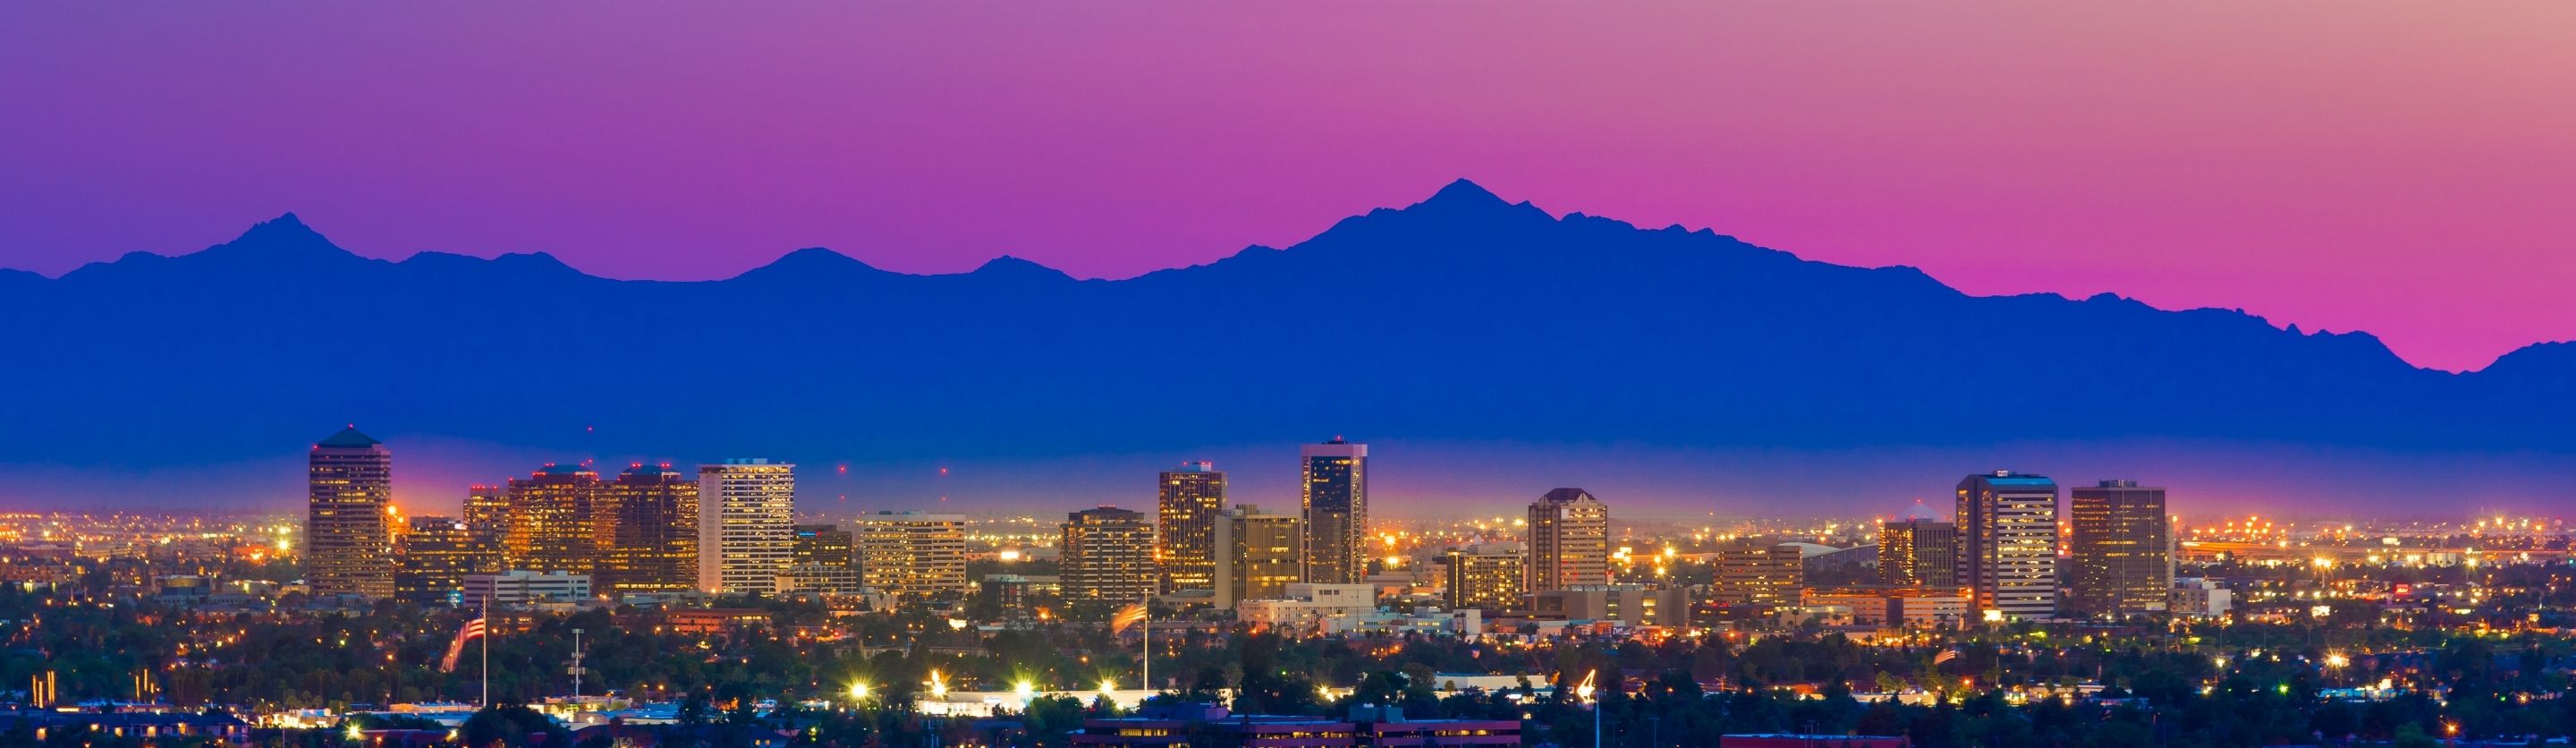 Phoenix, AZ skyline